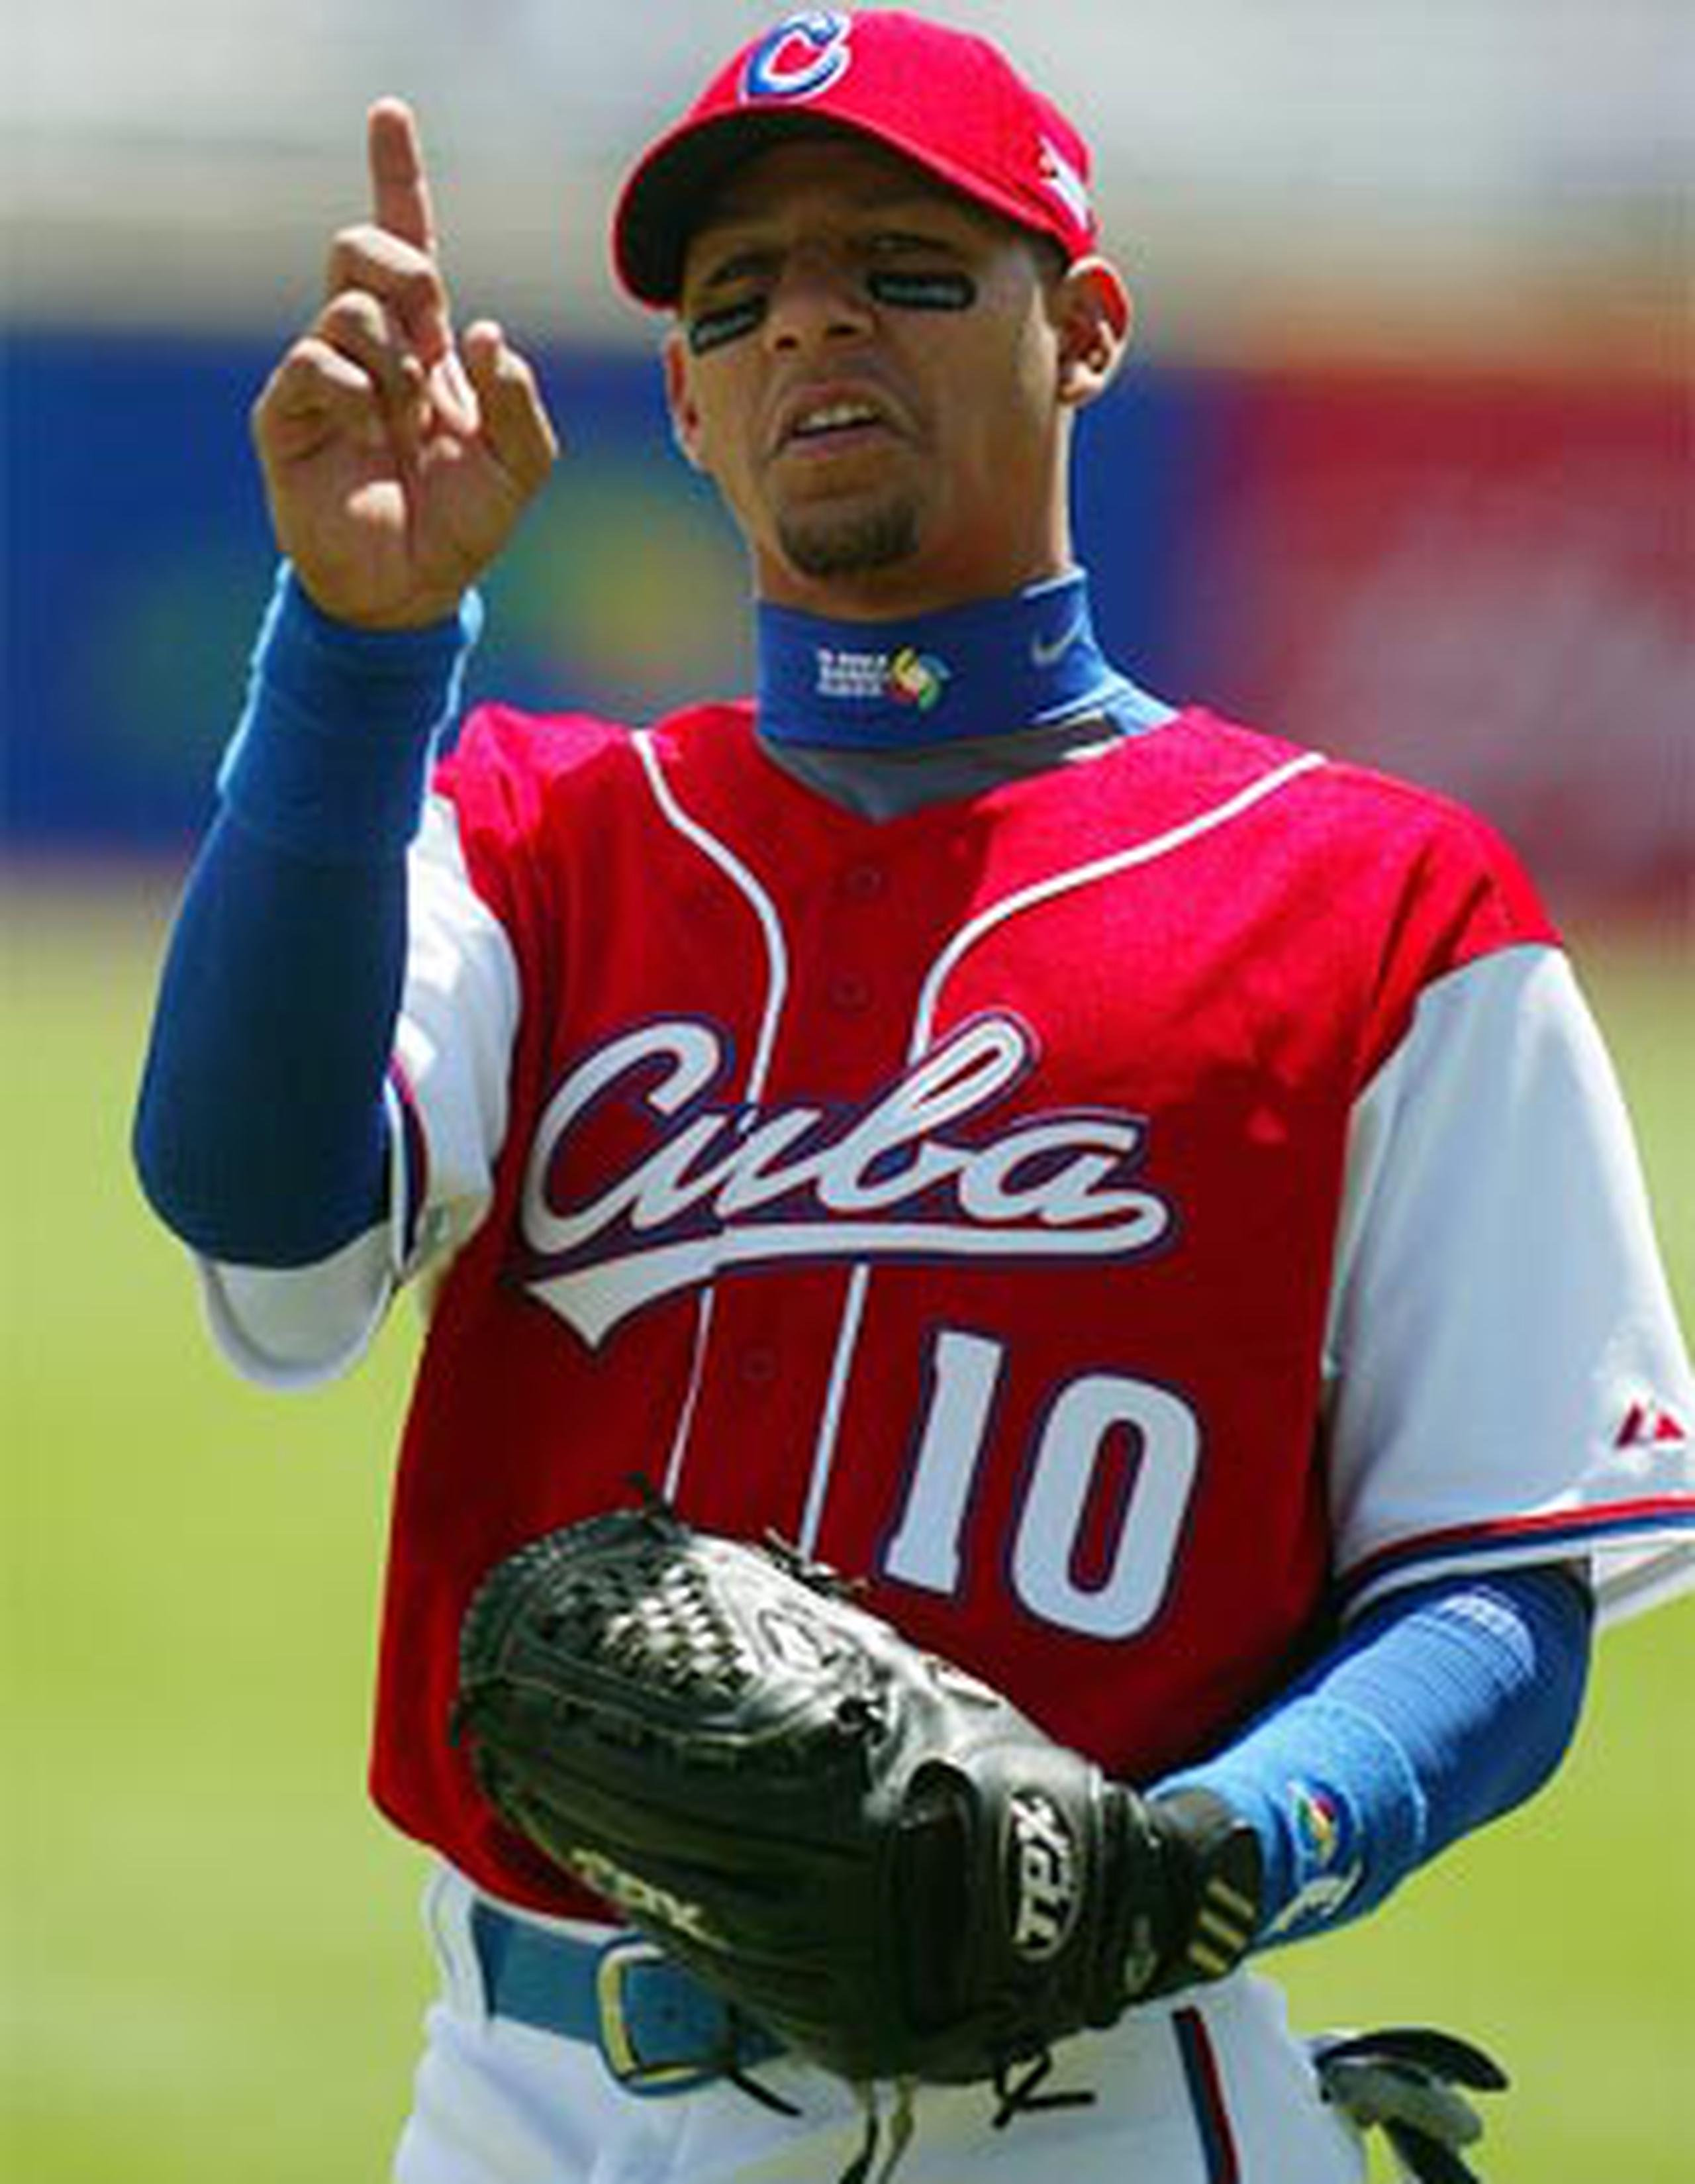 Yulieski, hijo de la leyenda de la pelota cubana, Lourdes Gourriel, no abandonó al equipo Cuba en el 2009, para el segundo Clásico Mundial, ni en 2013 para la tercera edición. (Archivo)